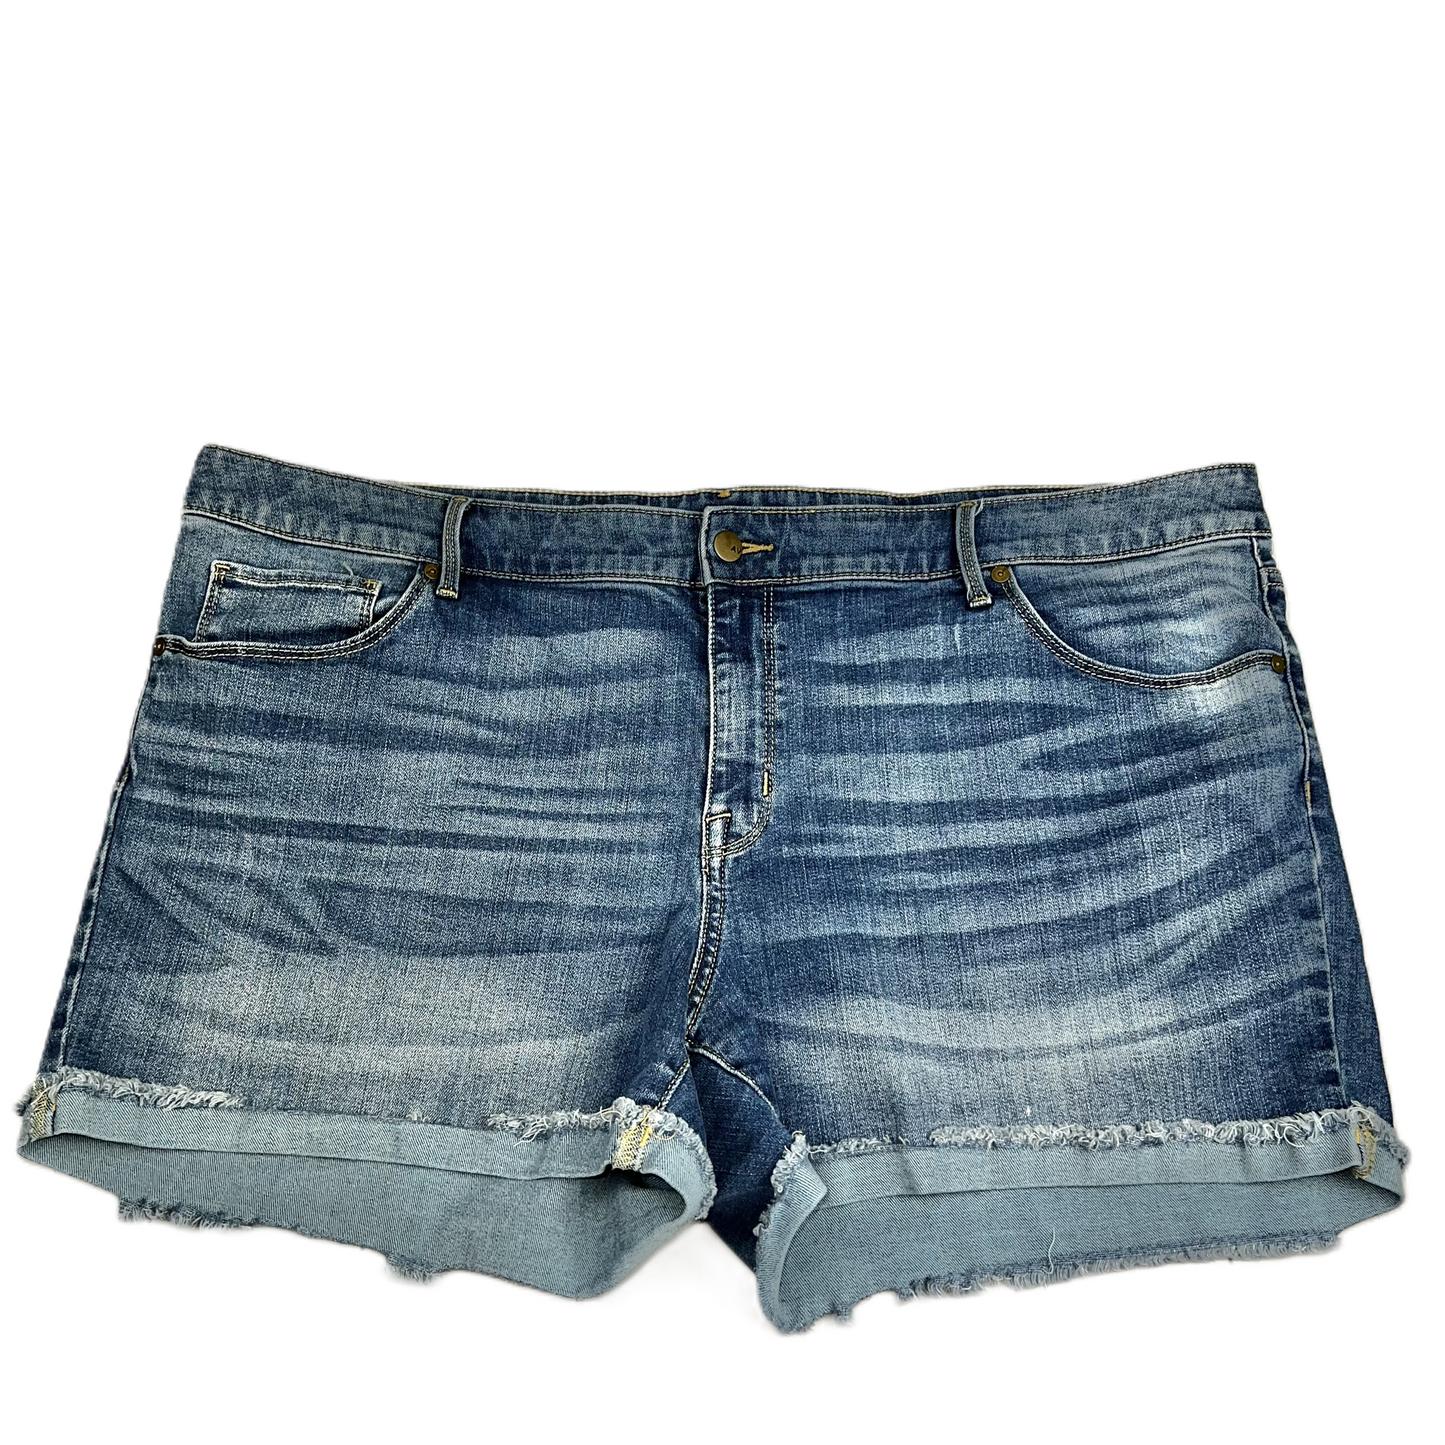 Blue Denim Shorts By Ava & Viv, Size: 22w